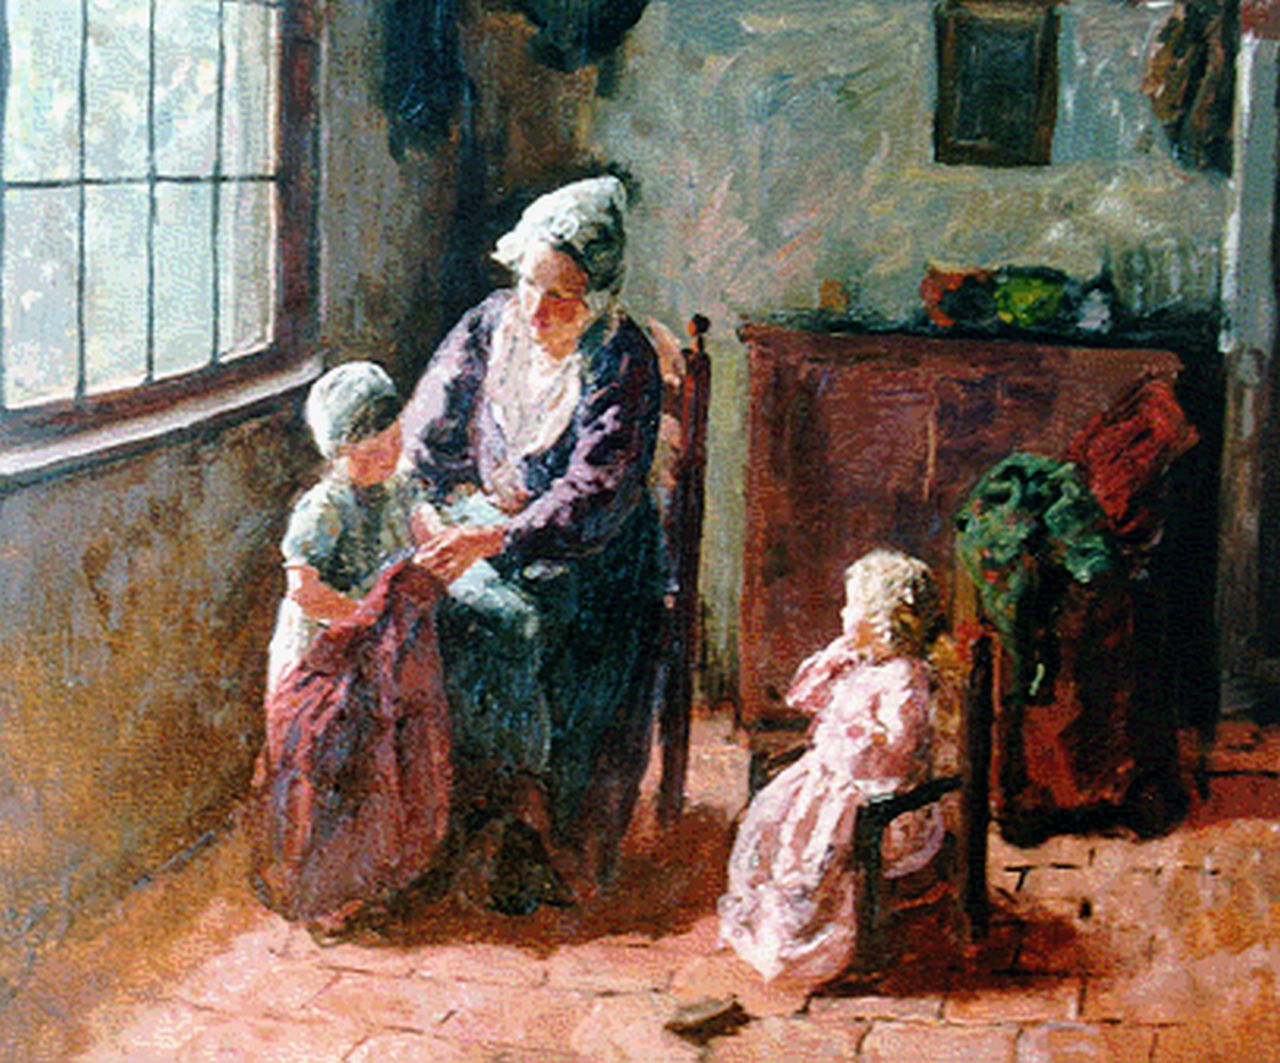 Pothast B.J.C.  | 'Bernard' Jean Corneille Pothast, Moeder en kinderen in interieur (studie), olieverf op doek 53,0 x 65,0 cm